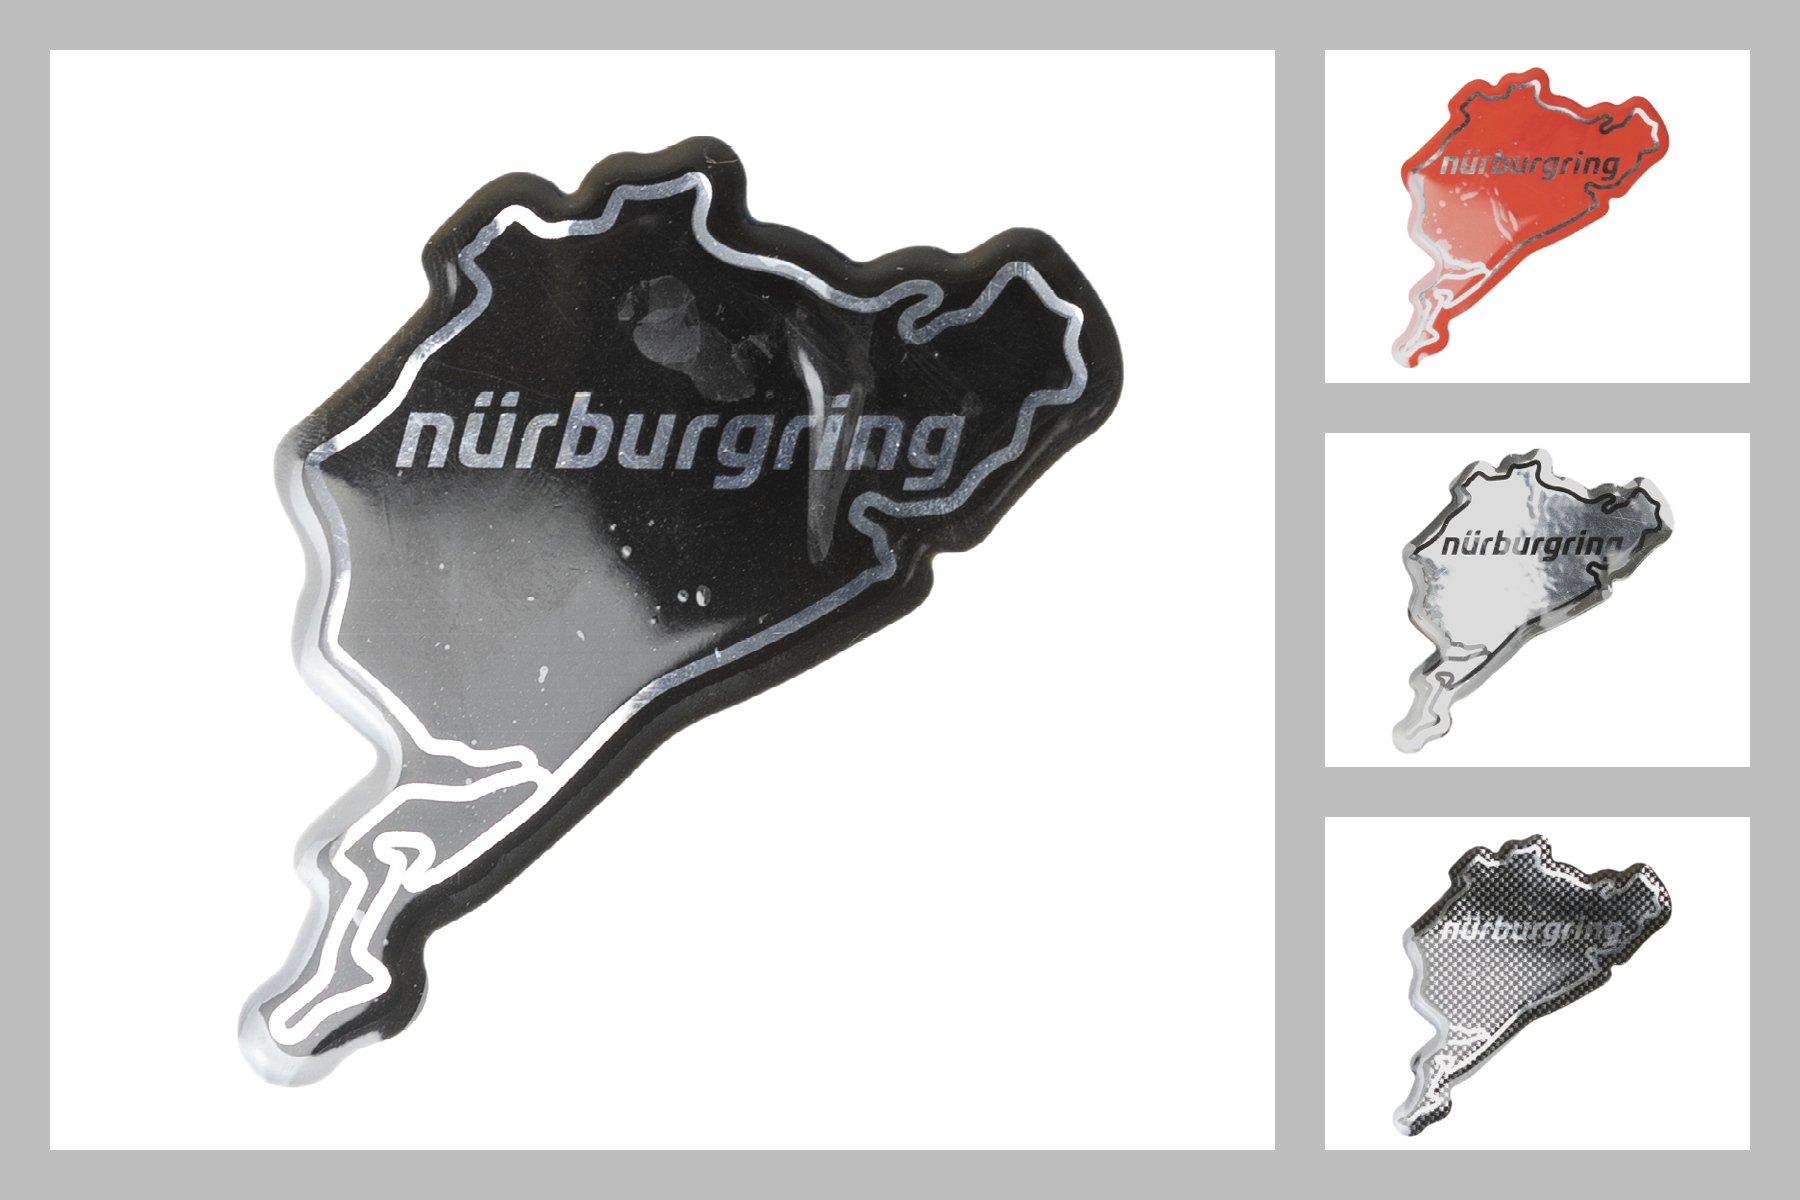 3D Aufkleber Nürburgring 6cm